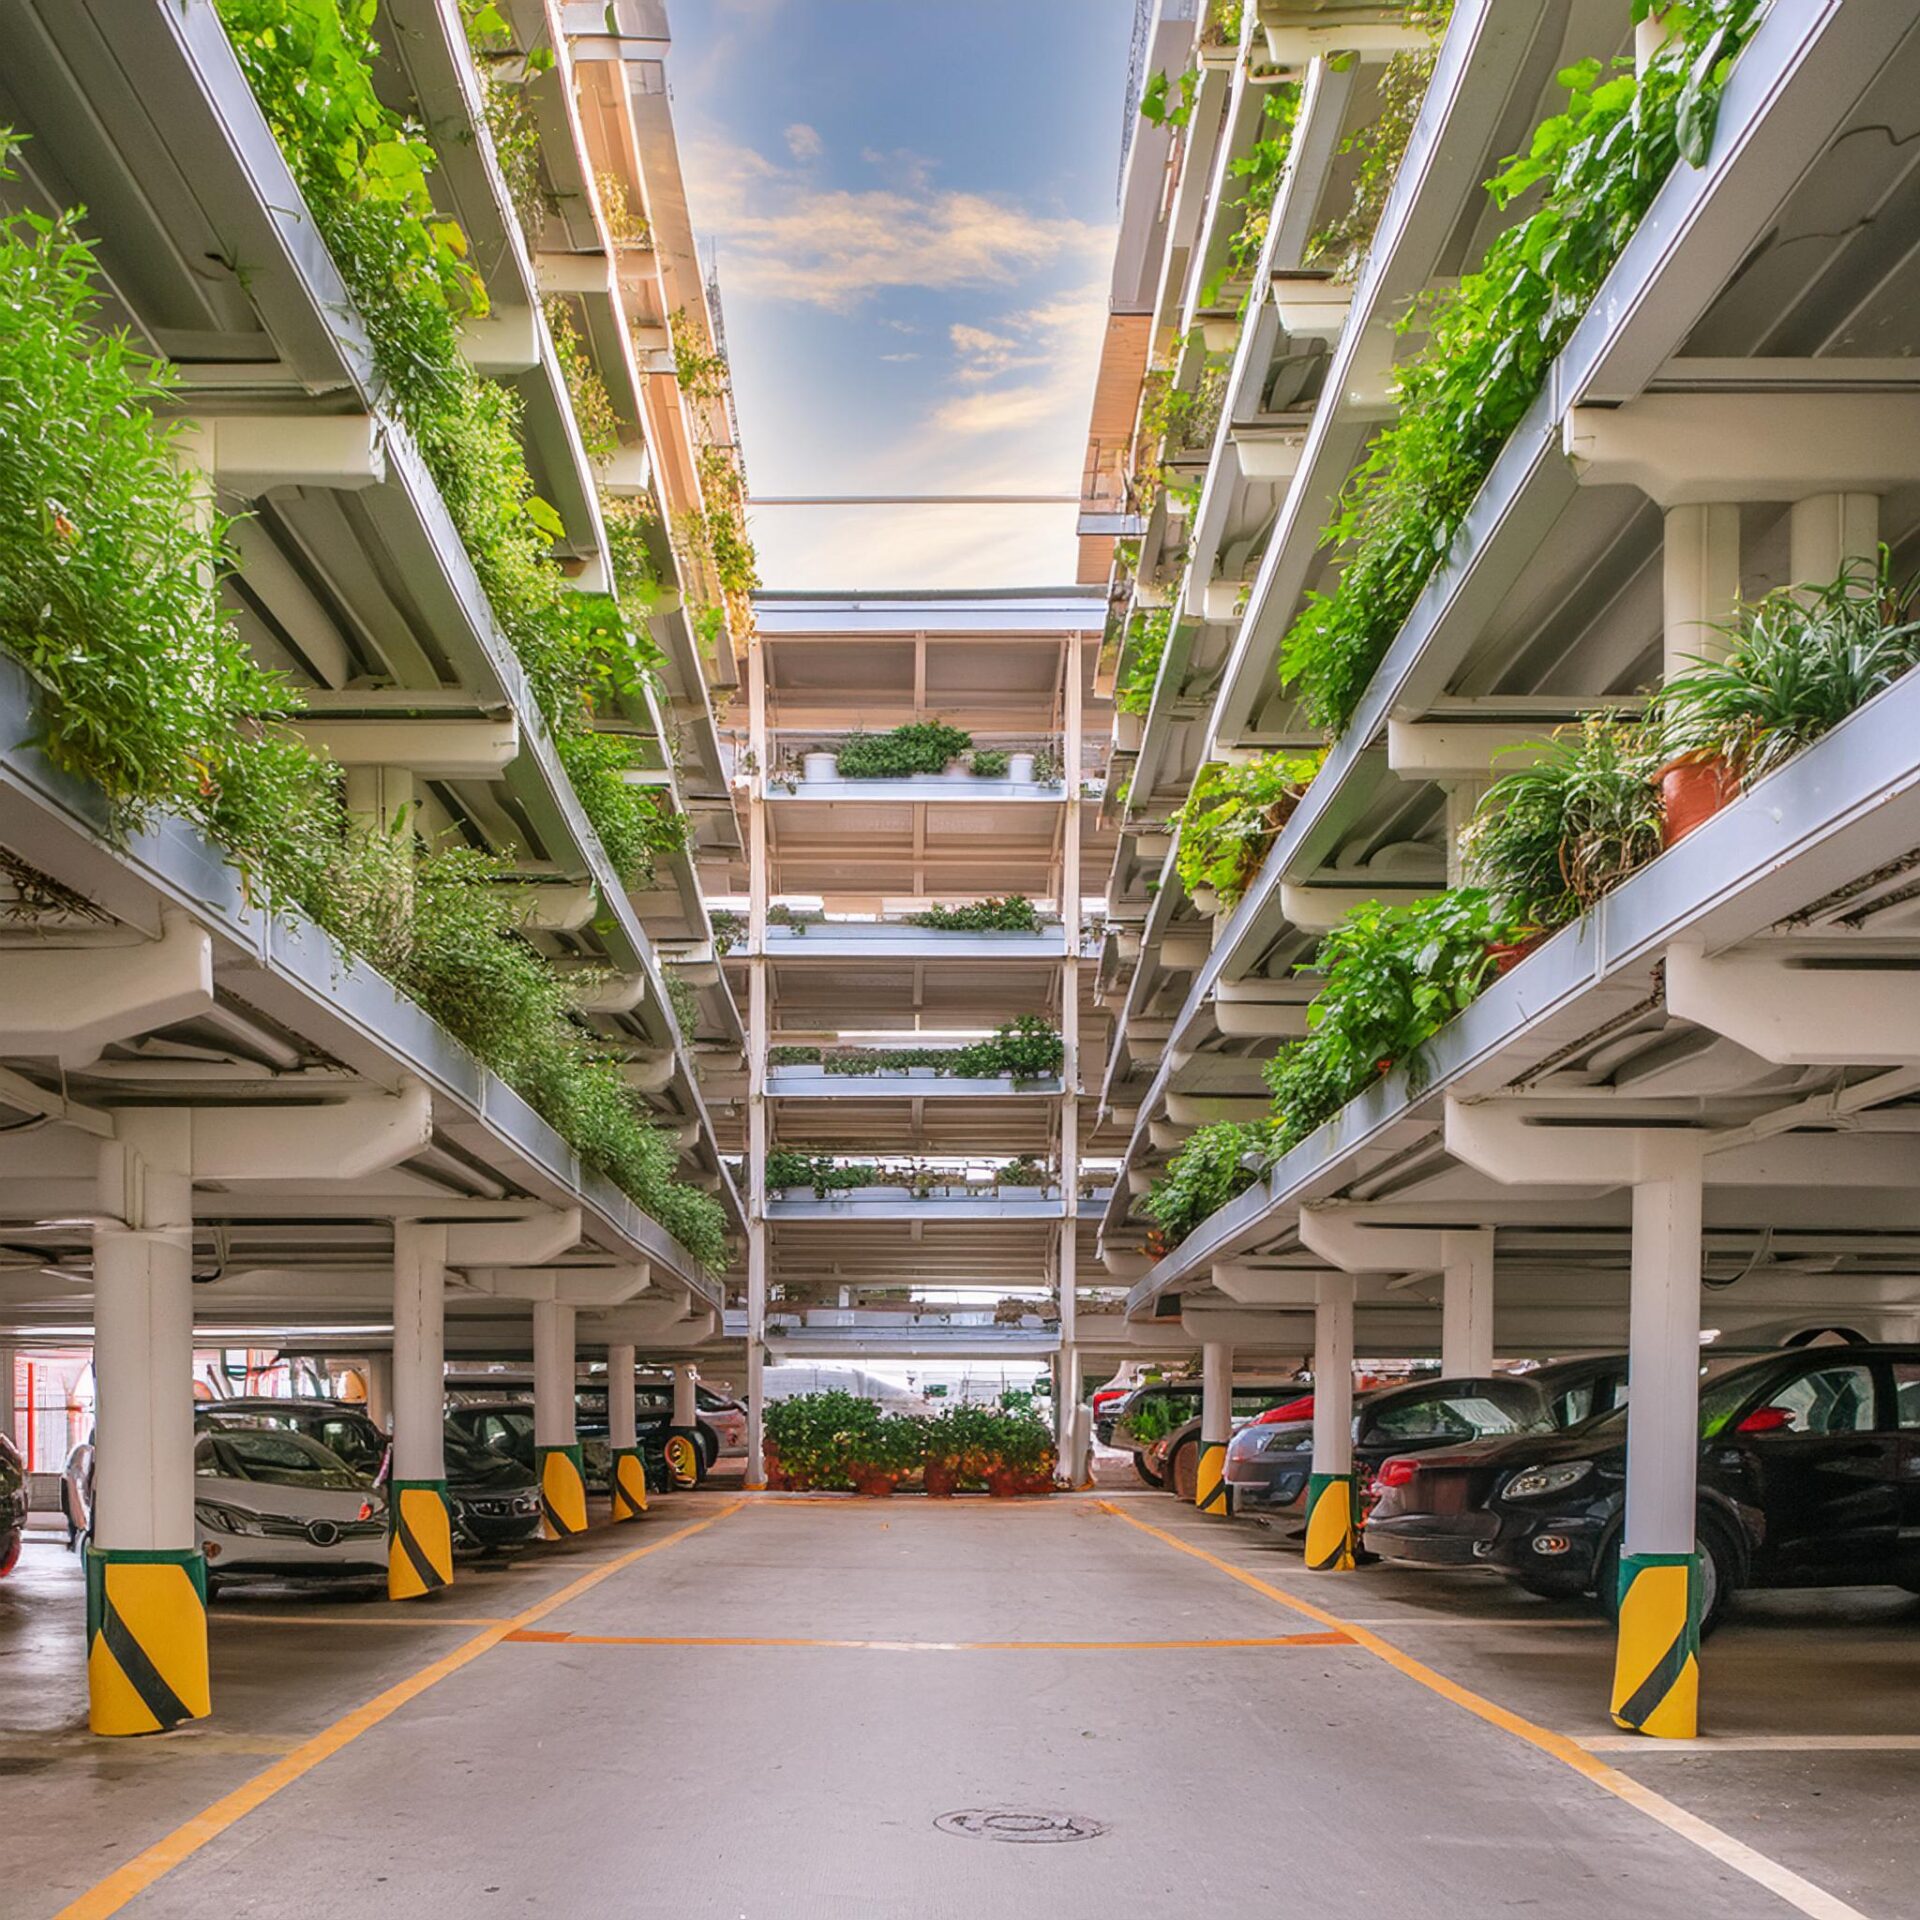 Ett parkeringsgarage i flera våningar, med öppning i taket. På den första våningen står bilar parkerade och på de andra våningarna är växtodlingar.